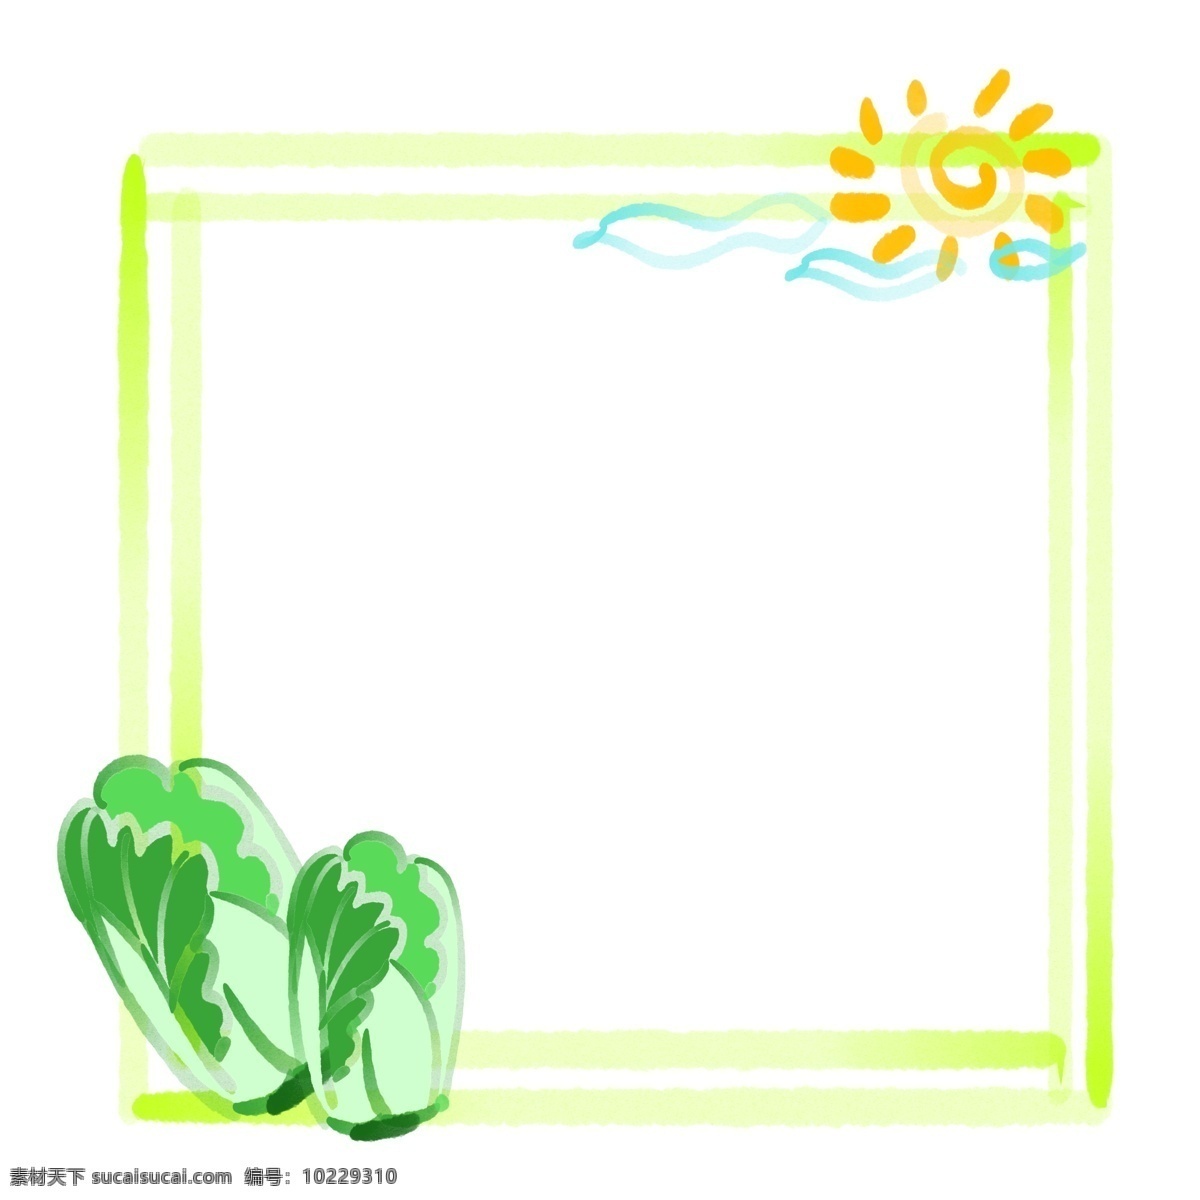 立体 方形 白菜 边框 白菜蔬菜 立体方形边框 卡通太阳运动 绿色白色装饰 蔬菜小框 卡通可爱边框